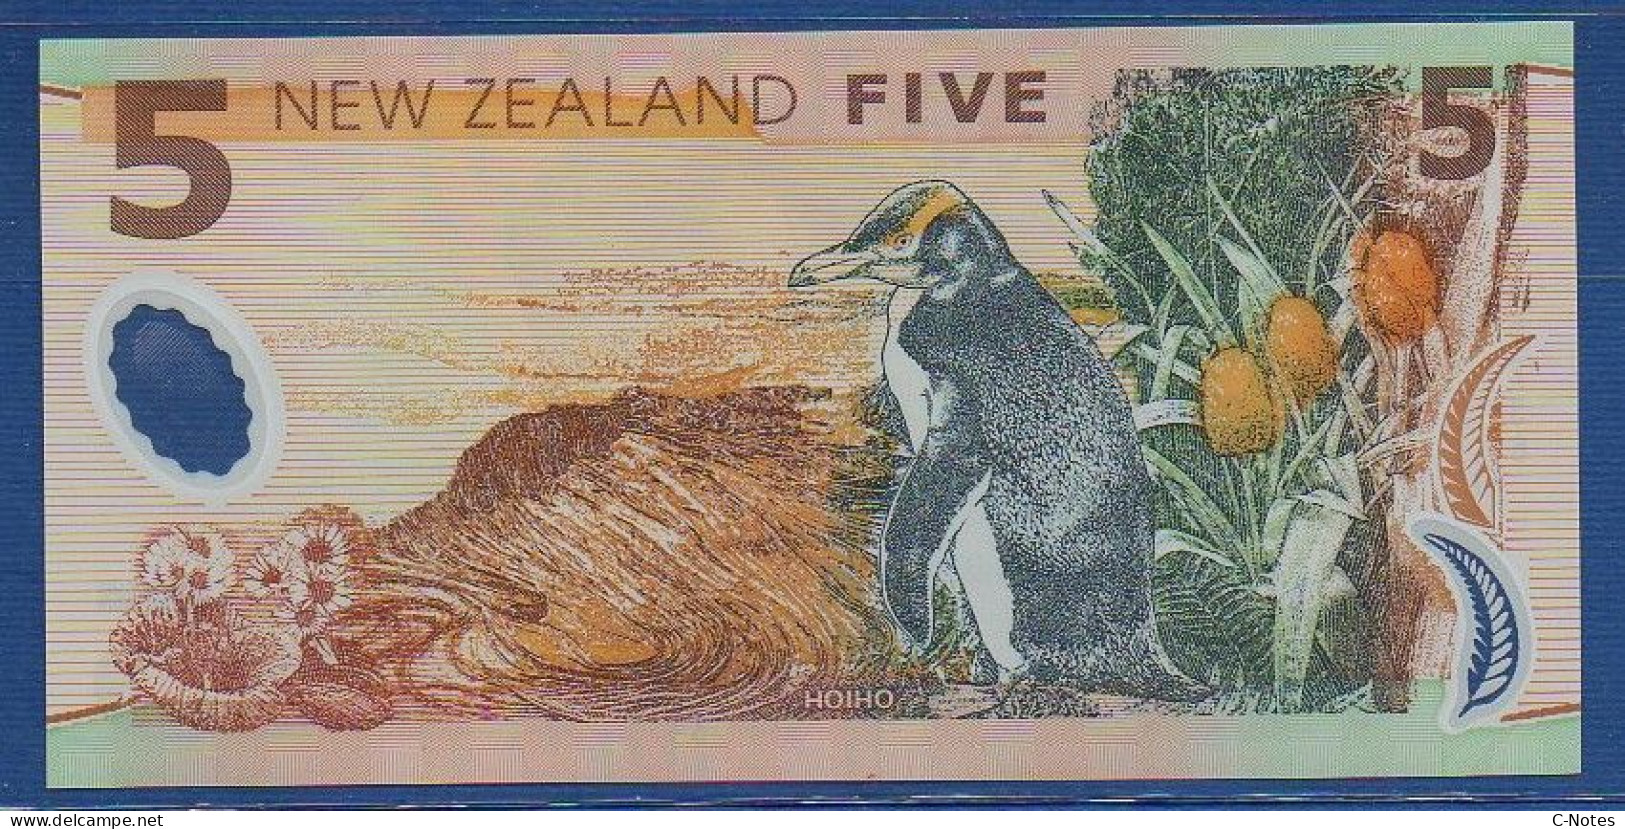 NEW ZEALAND  - P.185a – 5 Dollars 1999 UNC, S/n BK99 465736 - Neuseeland